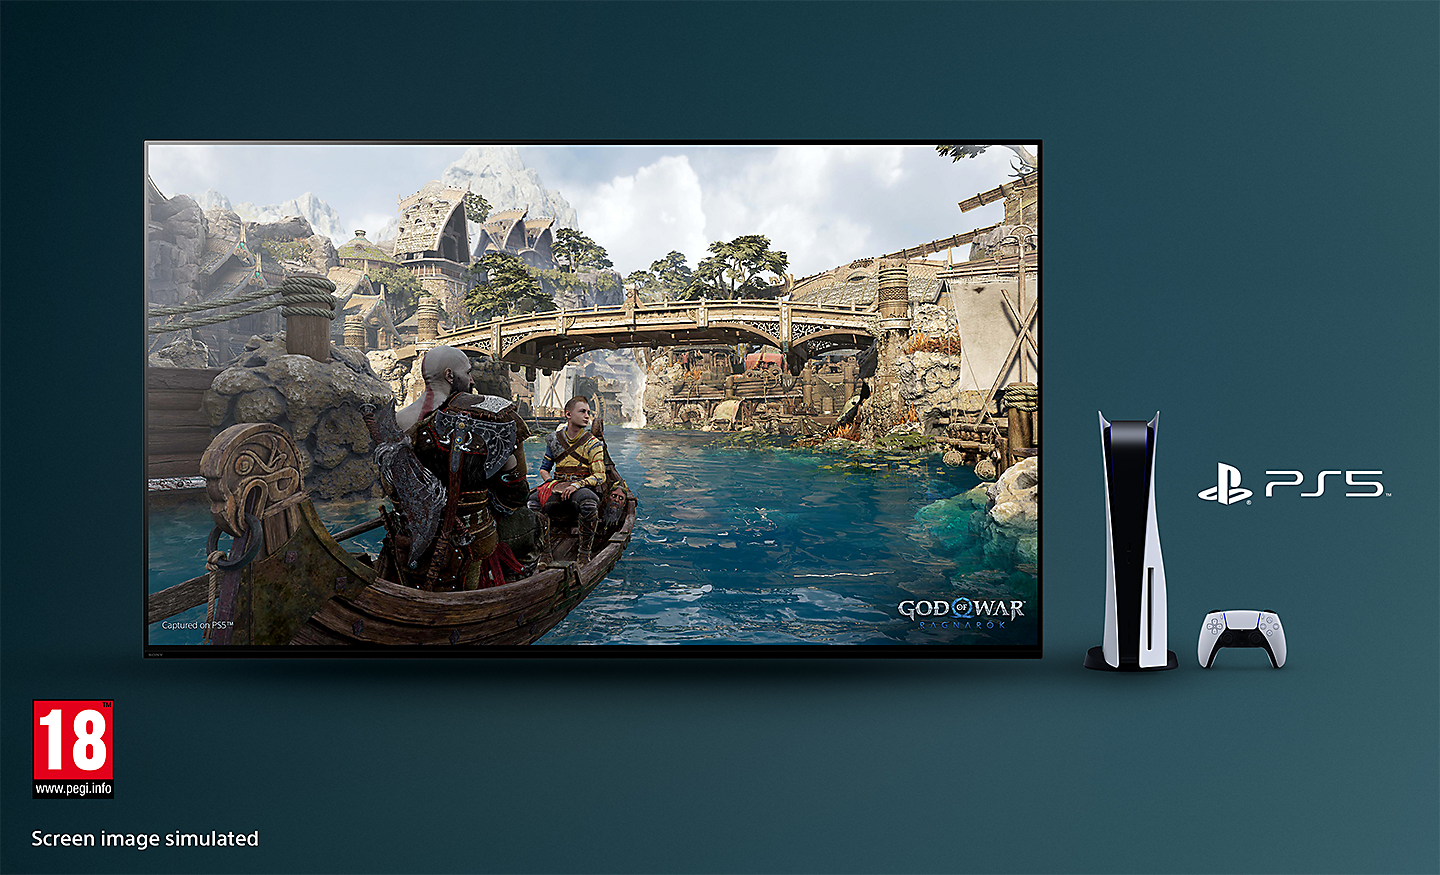 God of War -näyttökuva BRAVIA TV:ssä: Ragnarök, vene joessa ja taustalla silta, TV:n oikealla puolella PS5™-konsoli, -ohjain ja PS5™-logo ja alhaalla oikealla PEGI 18 -logo